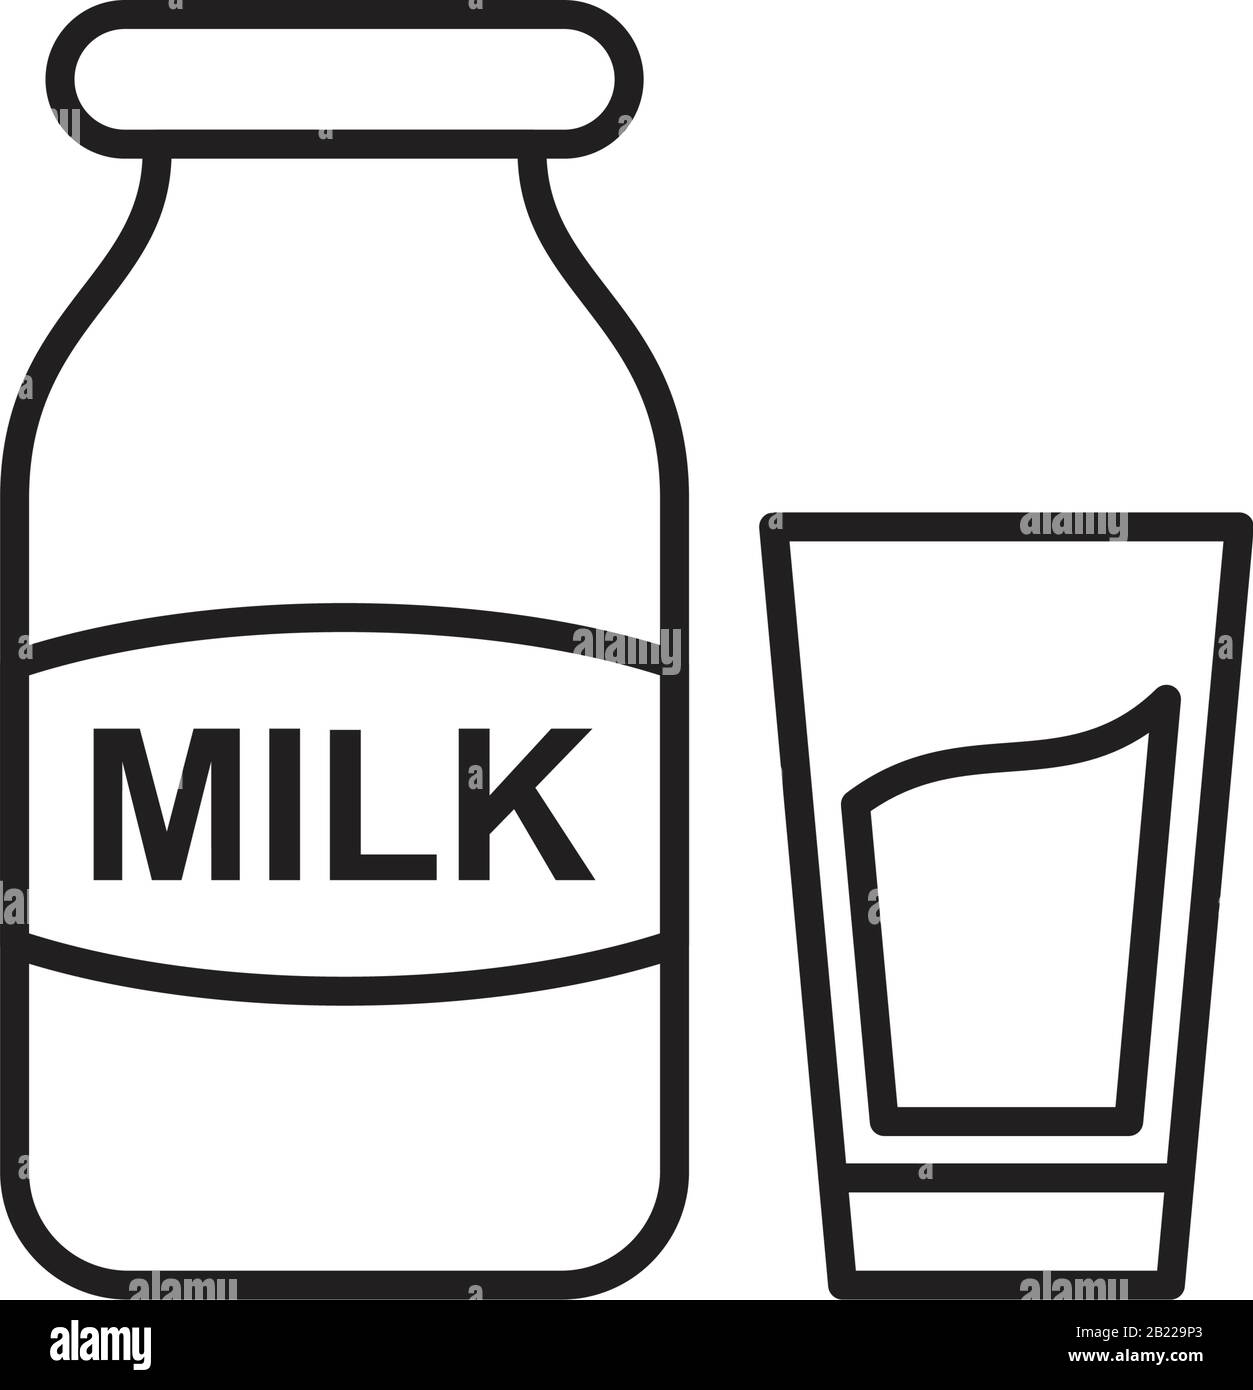 Modèle D'Icône lait couleur noire modifiable. Symbole d'Icône de lait illustration vectorielle plate pour la conception graphique et Web. Illustration de Vecteur